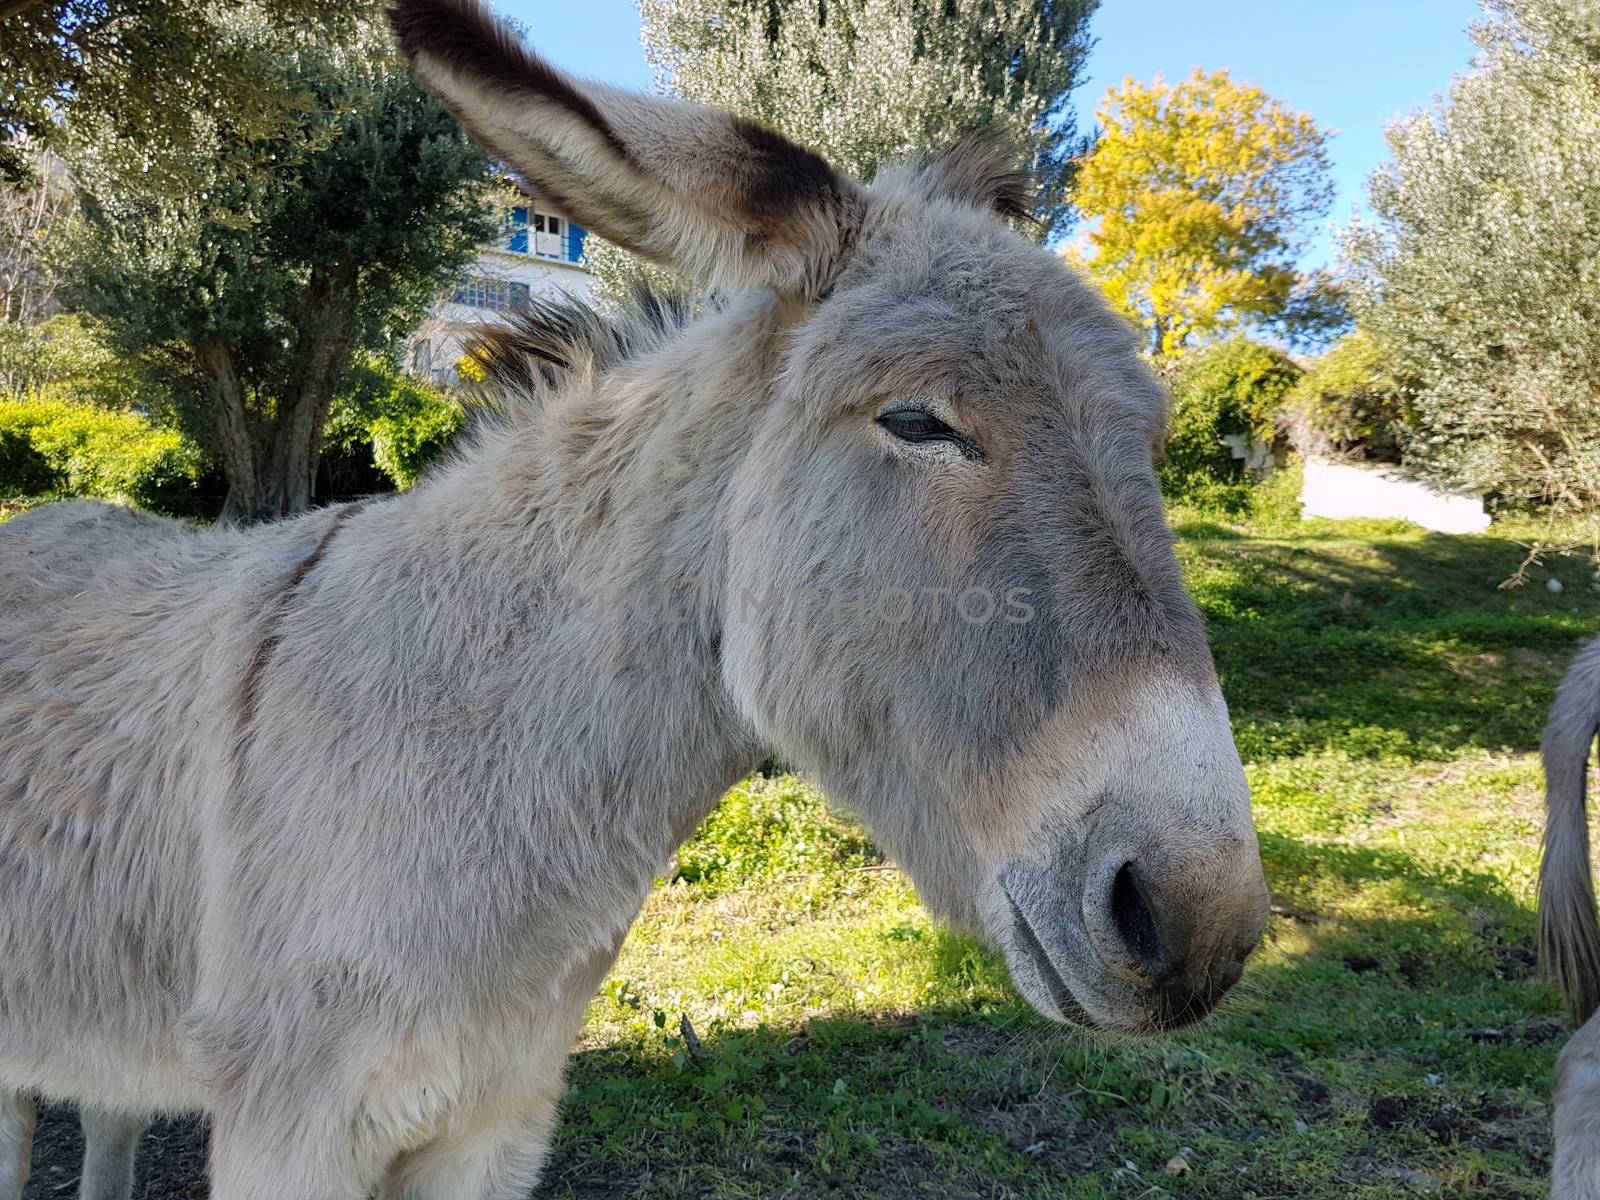 Beautiful Donkey by bensib